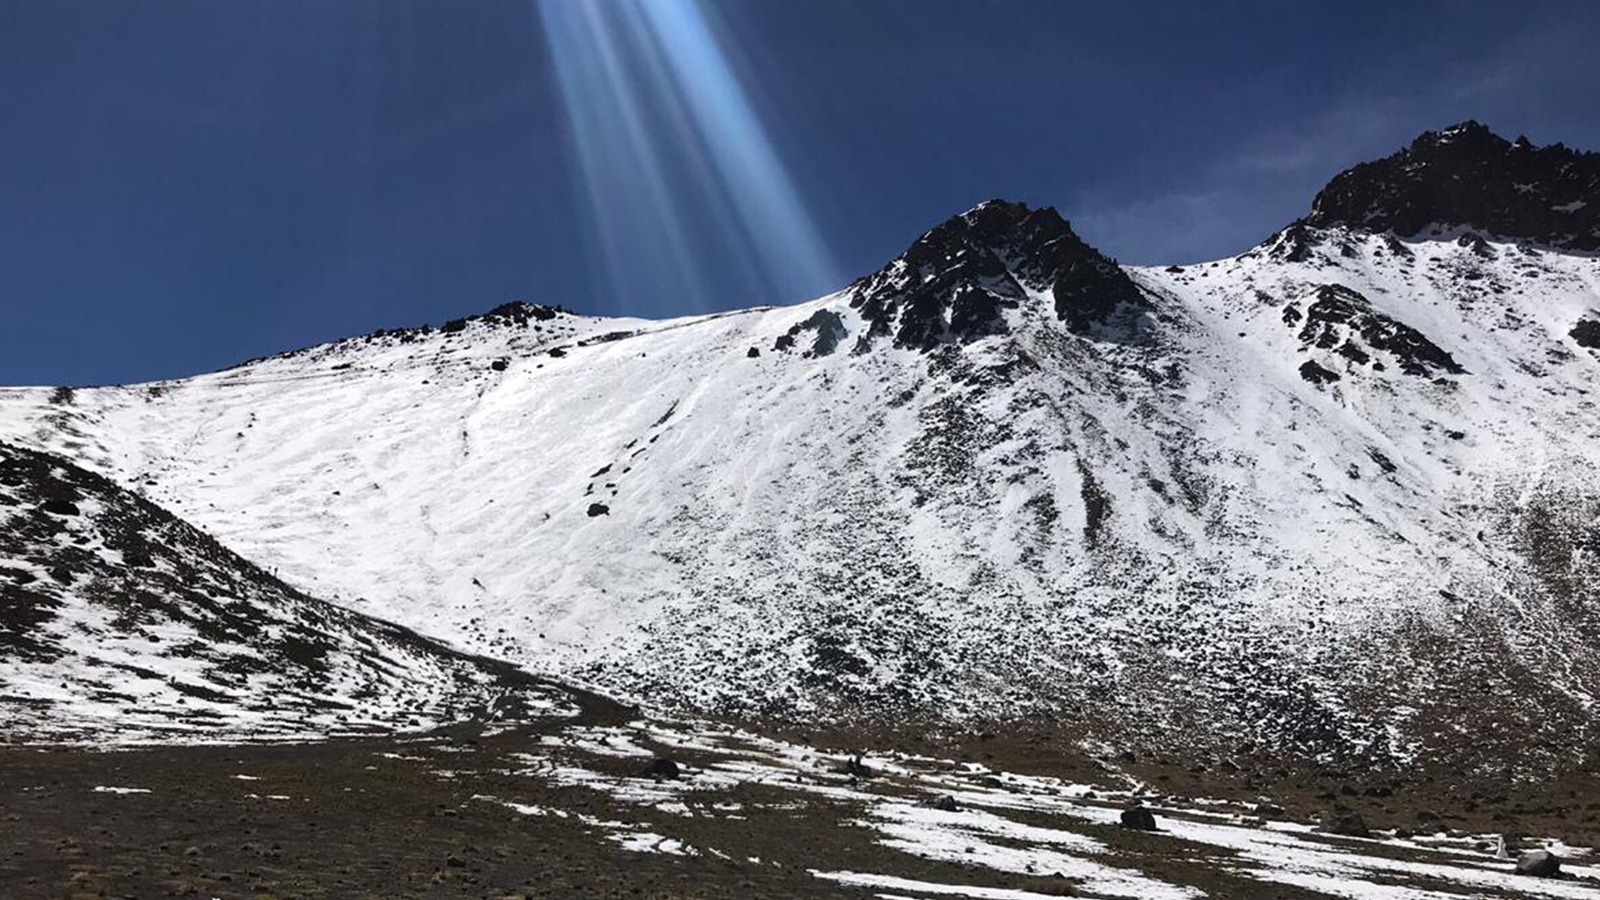 Vive una experiencia increíble en el Nevado de Toluca - EstiloDF